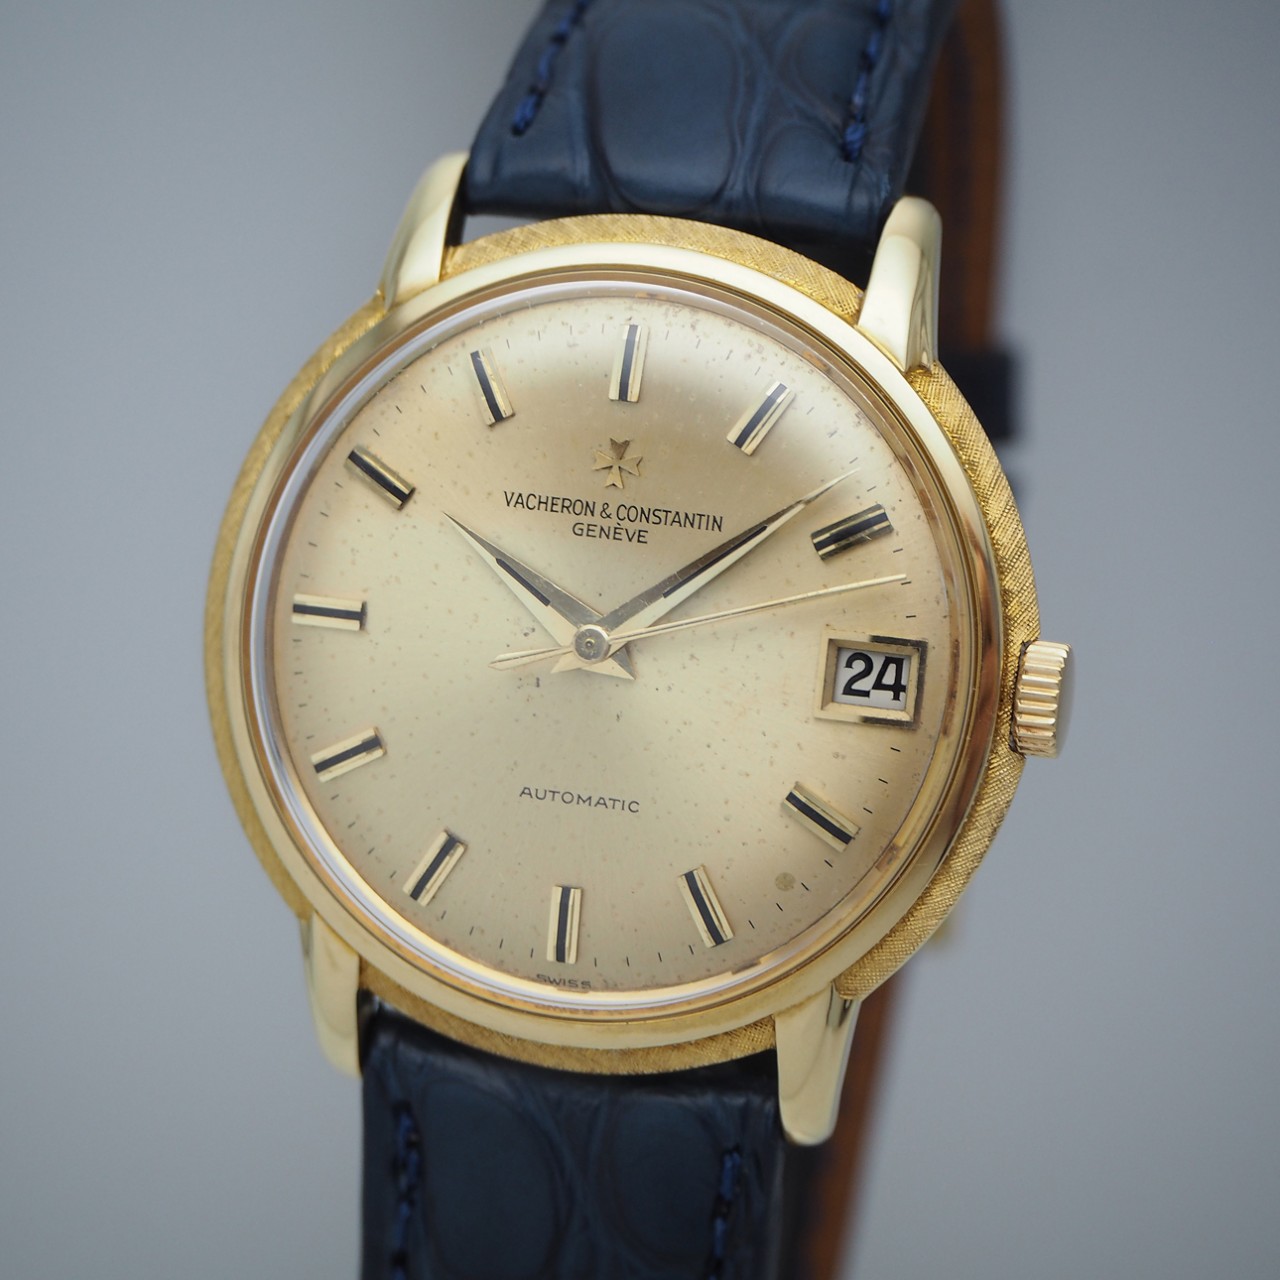 Vacheron Constantin Automatic Date Vintage 6394, 35mm, Gold 18k/750